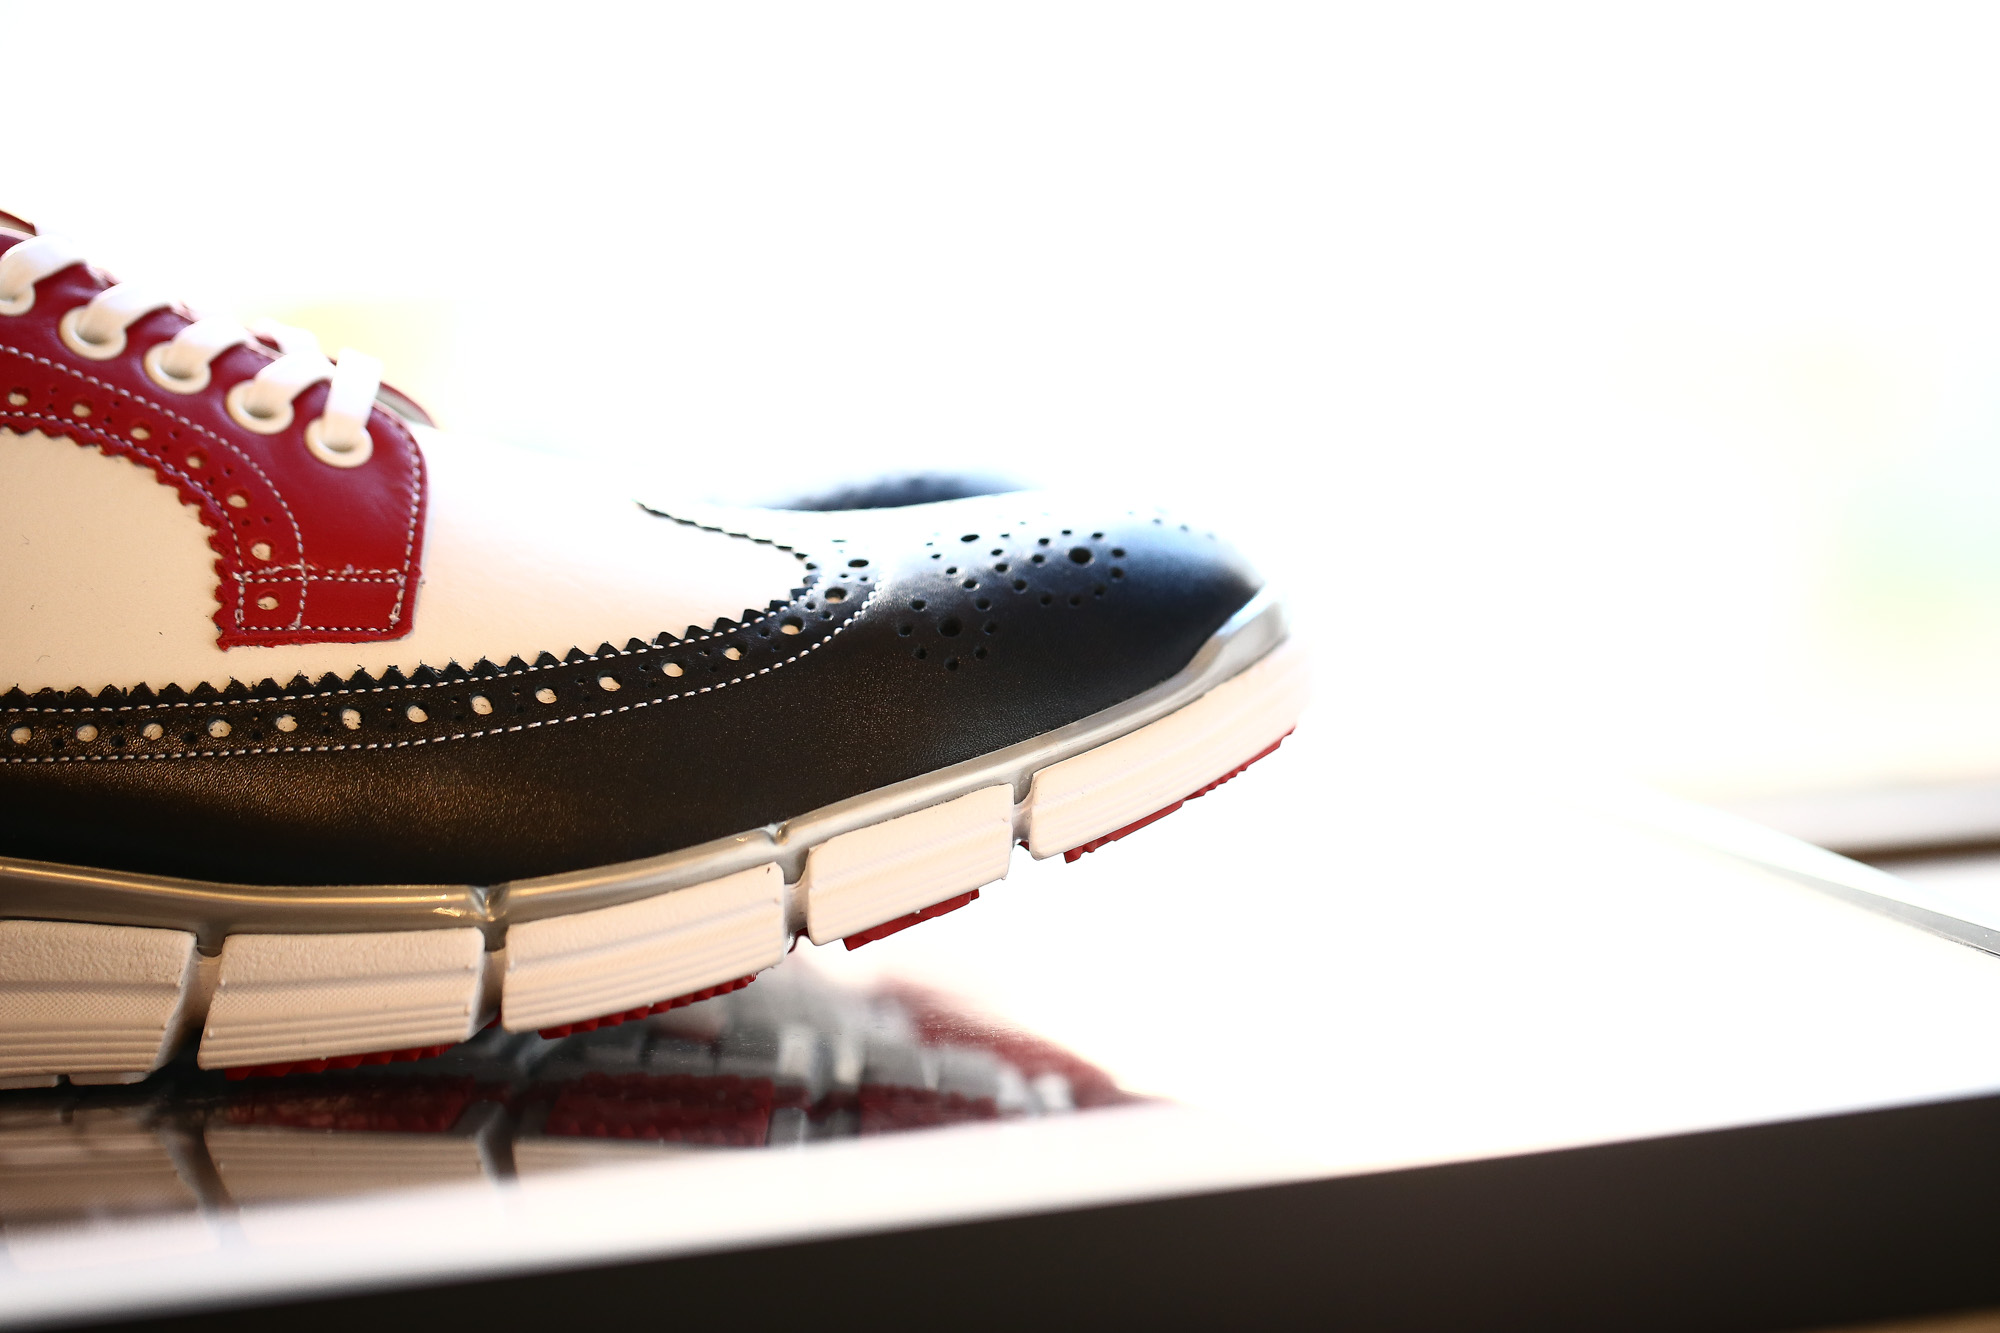 【HIROSHI TSUBOUCHI // ヒロシツボウチ】 HTO-AD05 Wingtip Sneakers トリコロールカラー Calf Leather カーフレザー ウィングチップ スニーカー NAVY / WHITE / RED (ネイビー / ホワイト / レッド・NV/WH/RE) Made in Japan (日本製) 2017 秋冬 【Re Arrival / 再入荷】 hiroshitsubouchi ヒロシツボウチ 木梨則武 ノリさん C.ロナウド クリスティアーノロナウド トリコカラー とんねるずのみなさんのおかげでした トリコロール